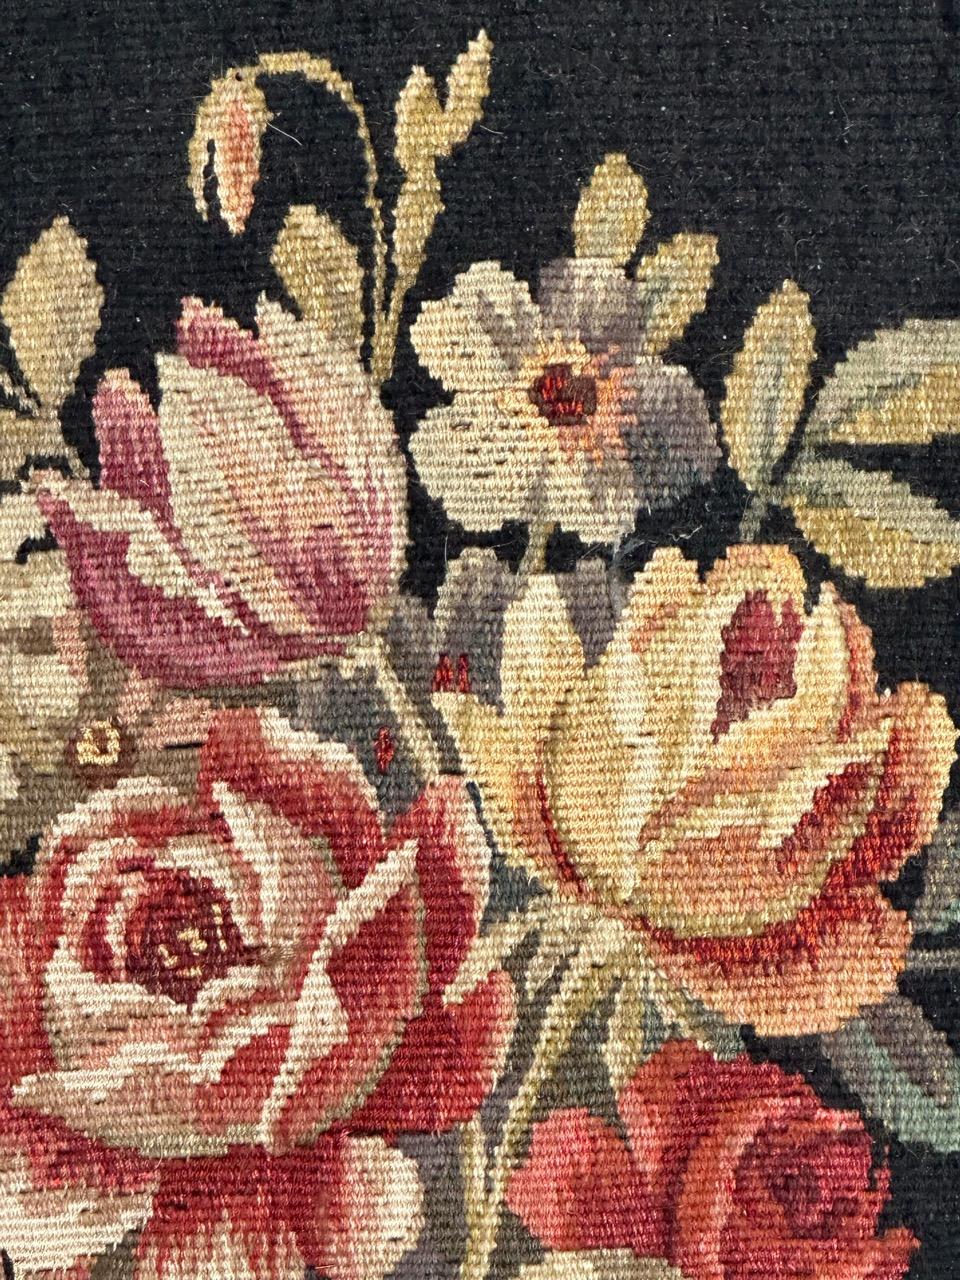 Très jolie tapisserie d'Aubusson du milieu du siècle dernier avec un beau dessin d'un pot de fleurs avec de jolies couleurs sur un fond noir.
Entièrement tissé à la main avec de la laine et de la soie sur une base de coton.

✨✨✨
